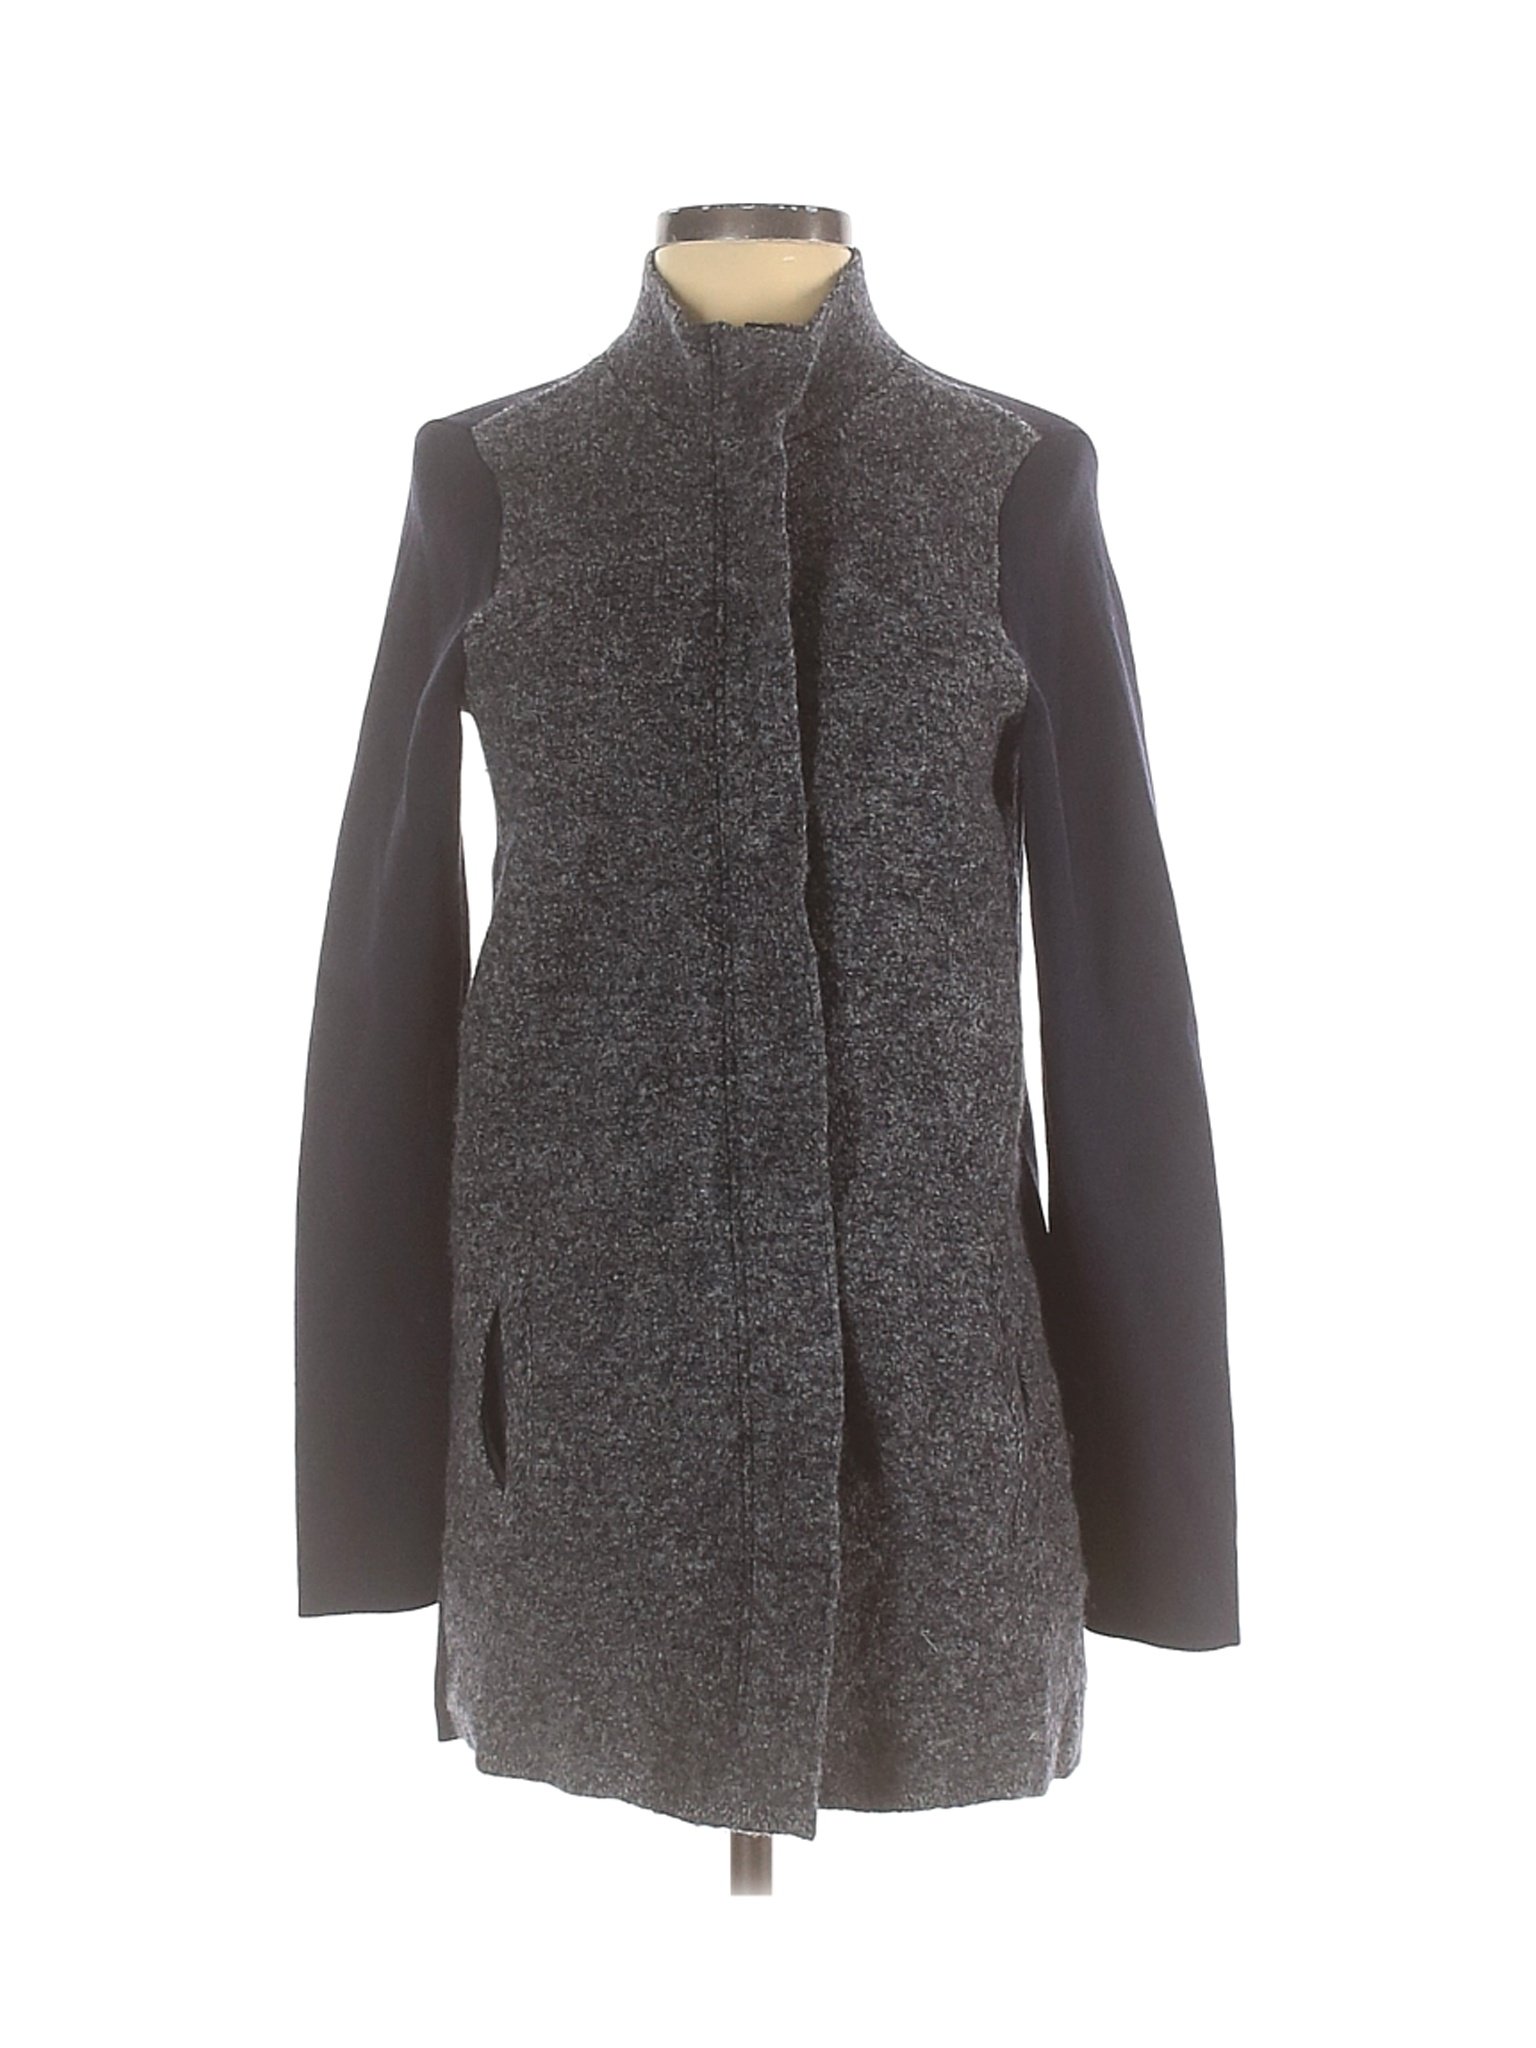 Ann Taylor Women Gray Wool Coat S | eBay